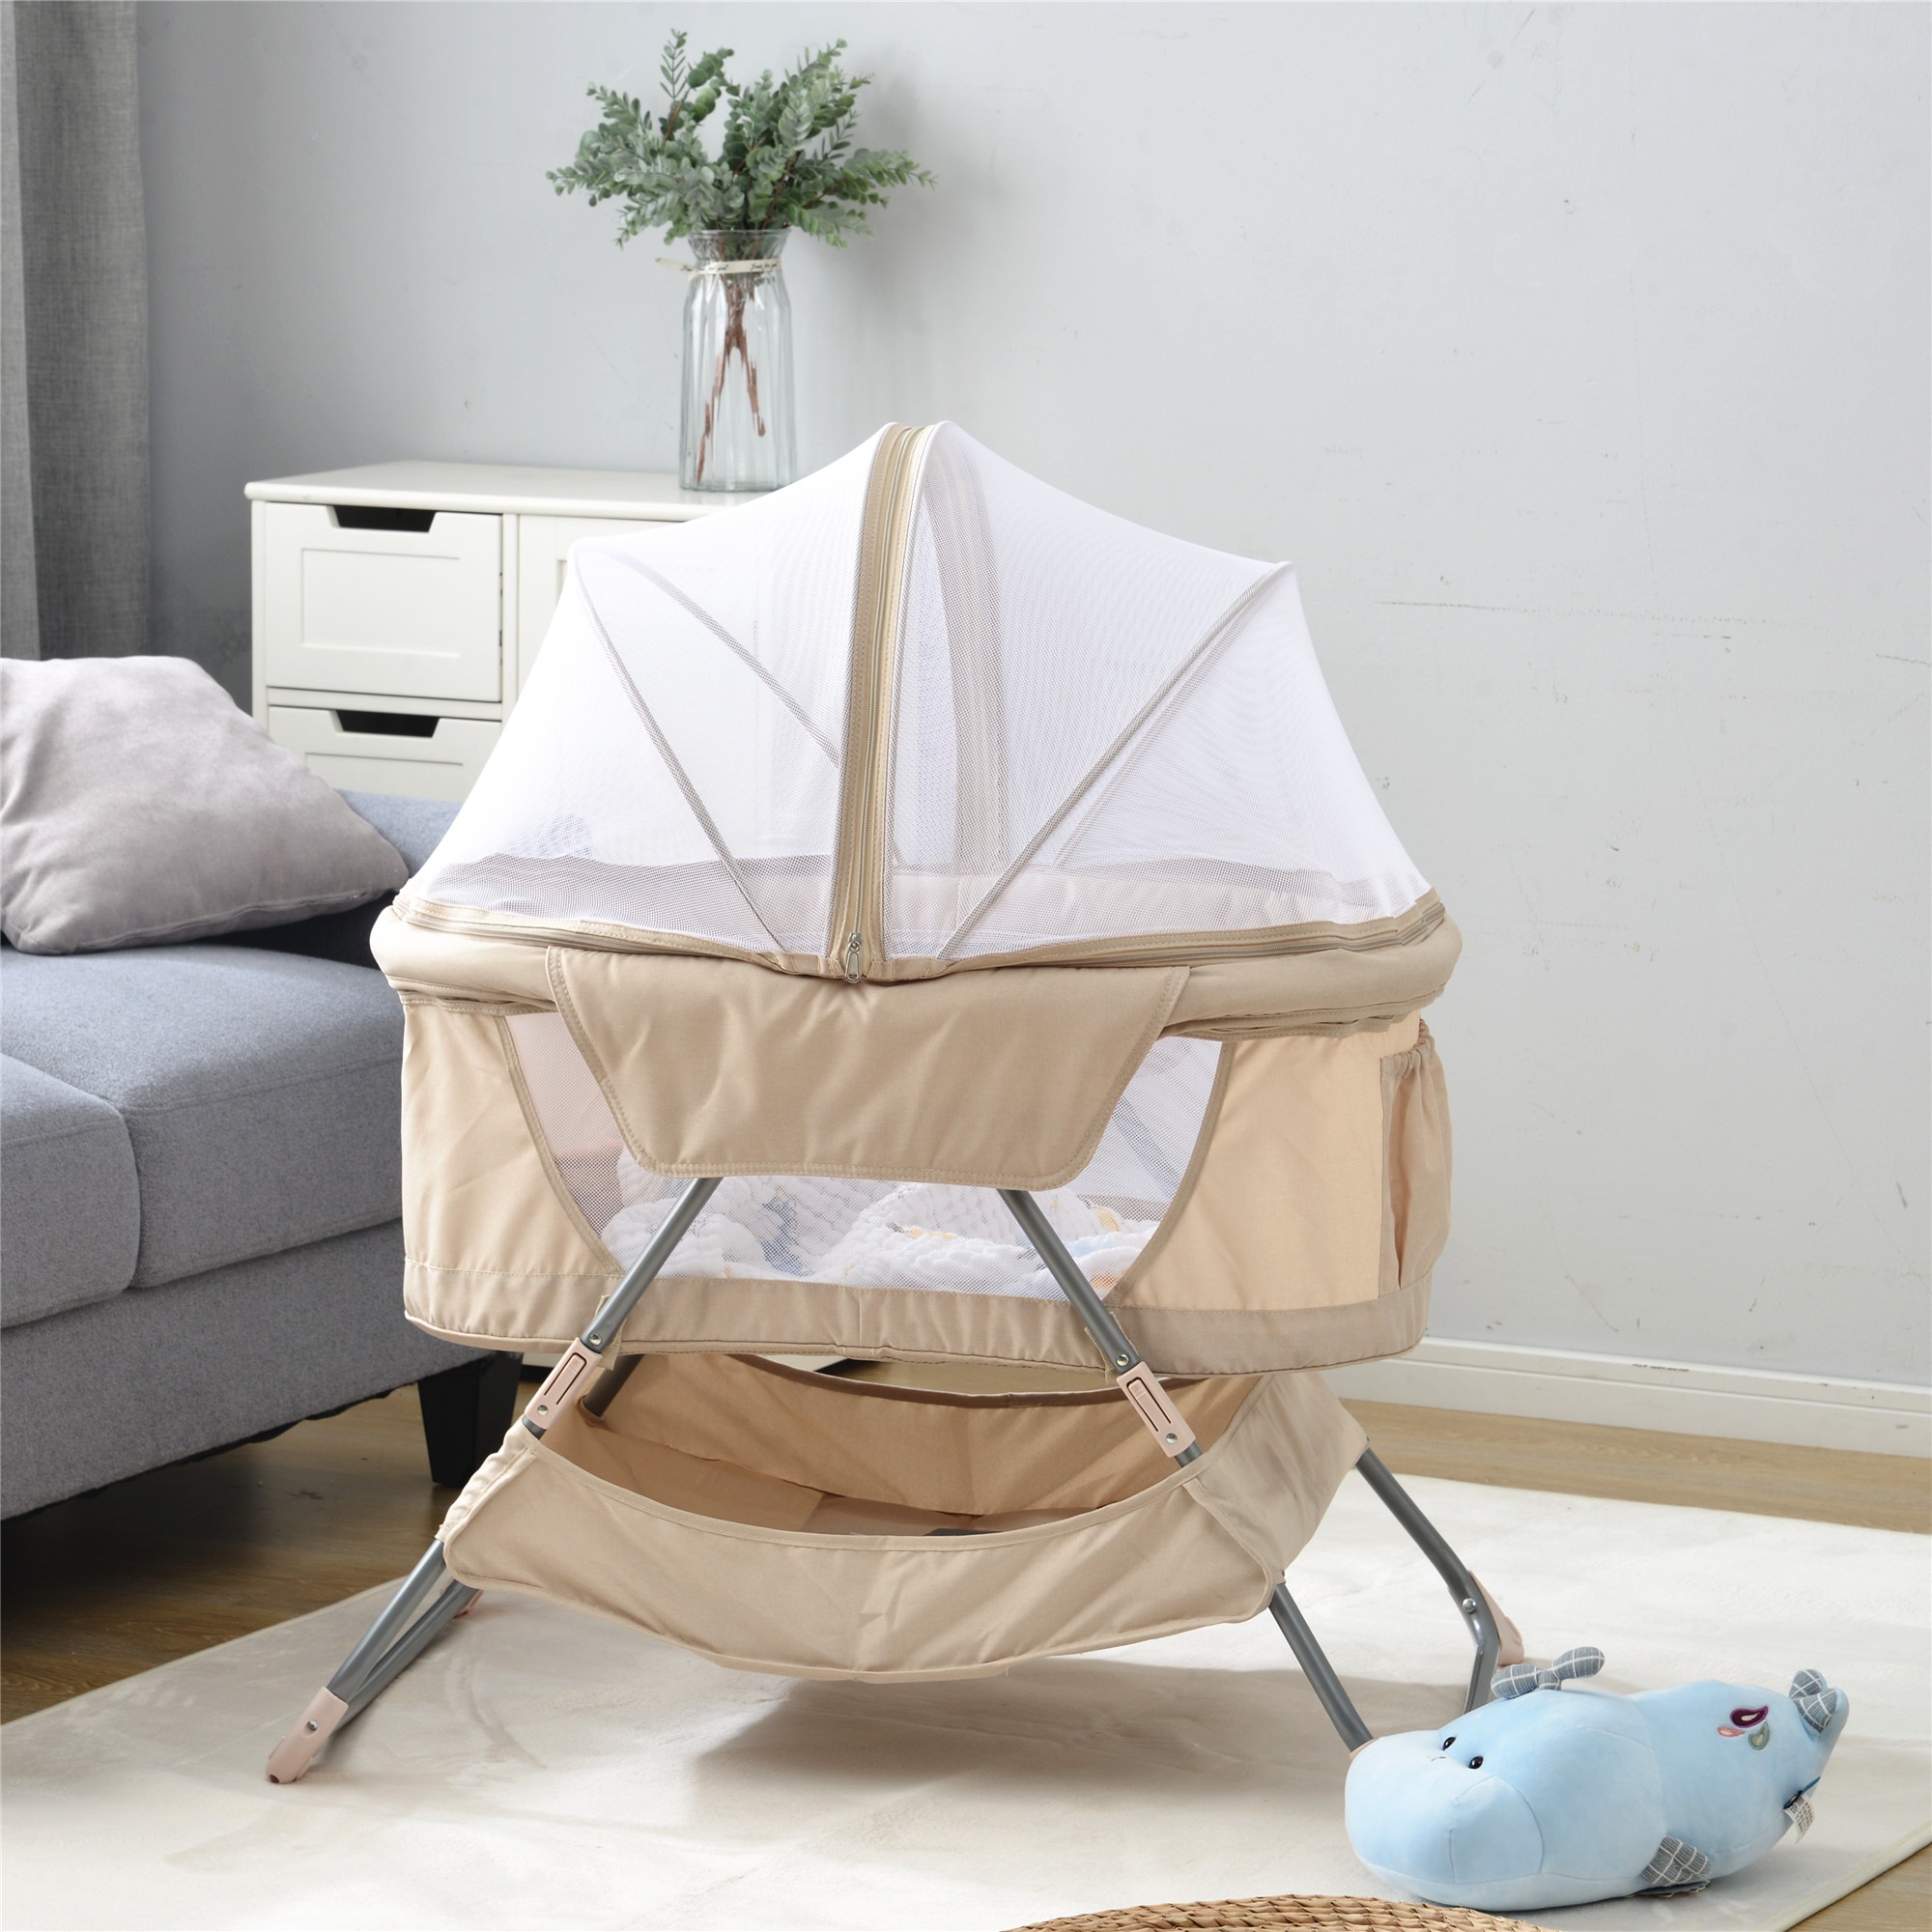 ベビーベッド 折り畳みベッド 赤ちゃん 推奨 最安値挑戦 添い寝ベッド 通気性良い 軽量 折りたたみベッ